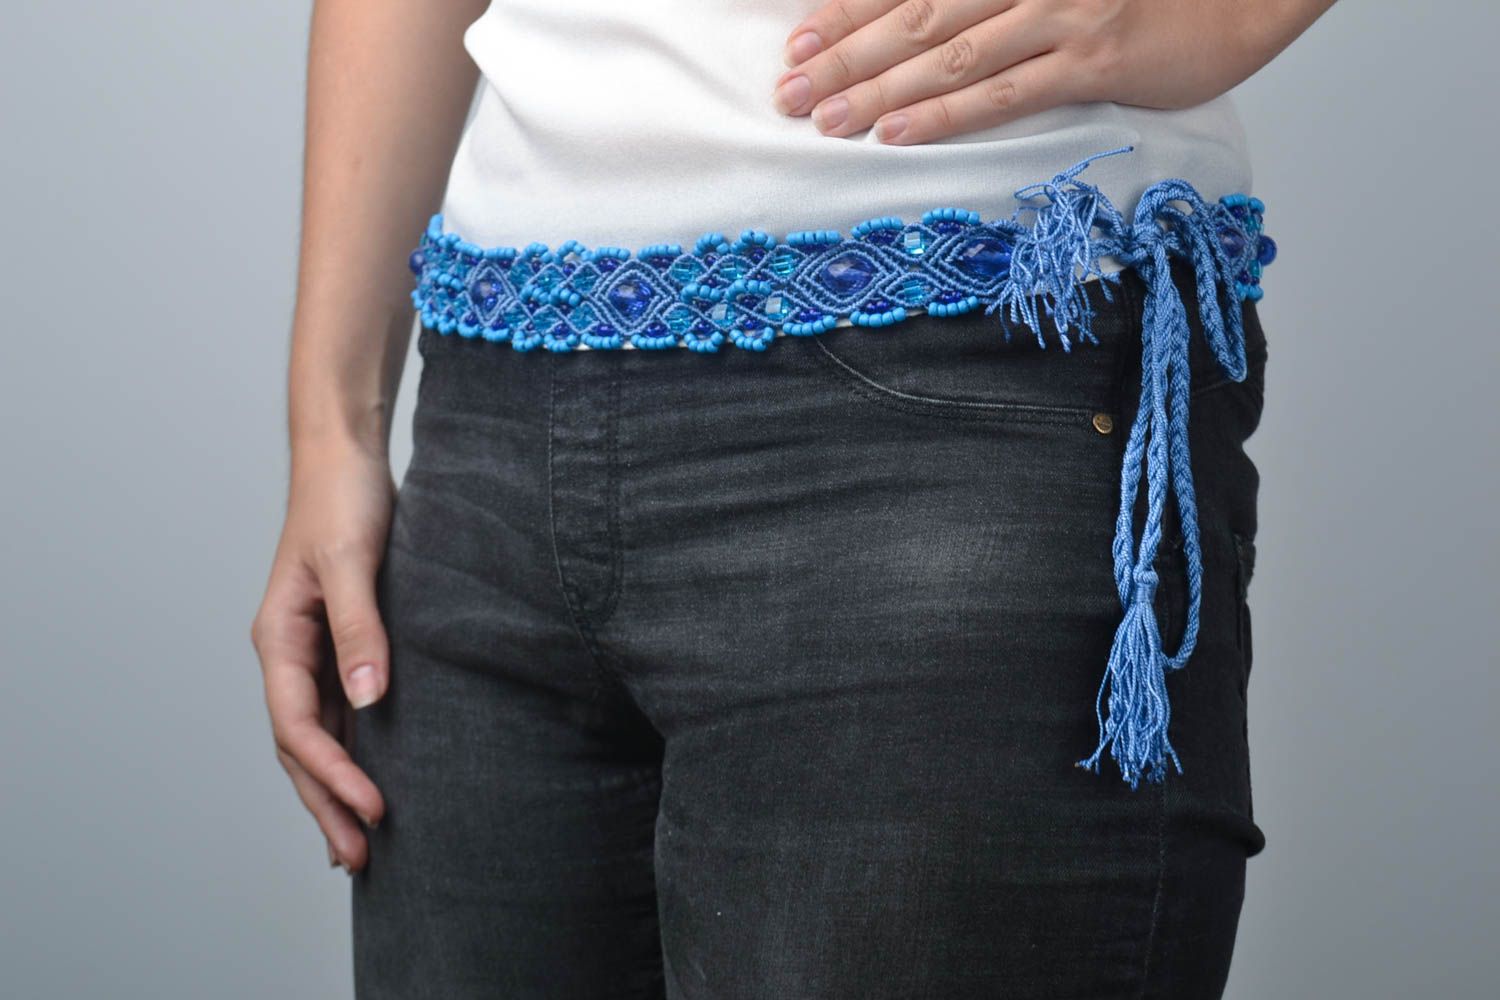 Пояс ручной работы пояс для талии плетеный женский пояс голубой с бисером фото 1